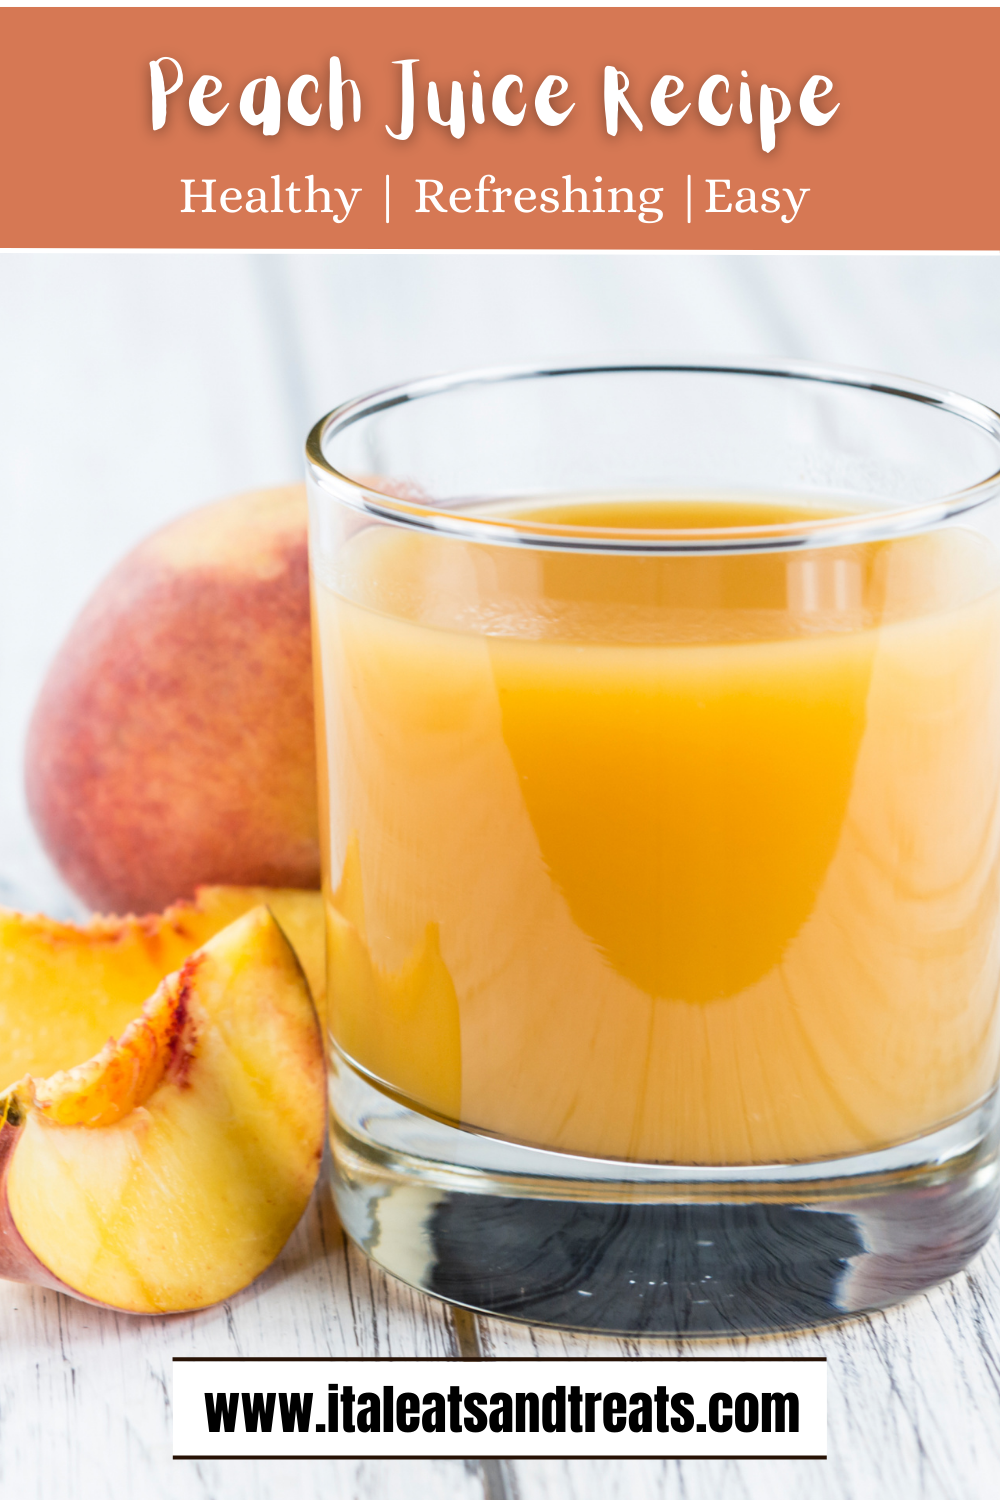 Peach Juice Recipe Pinterest image